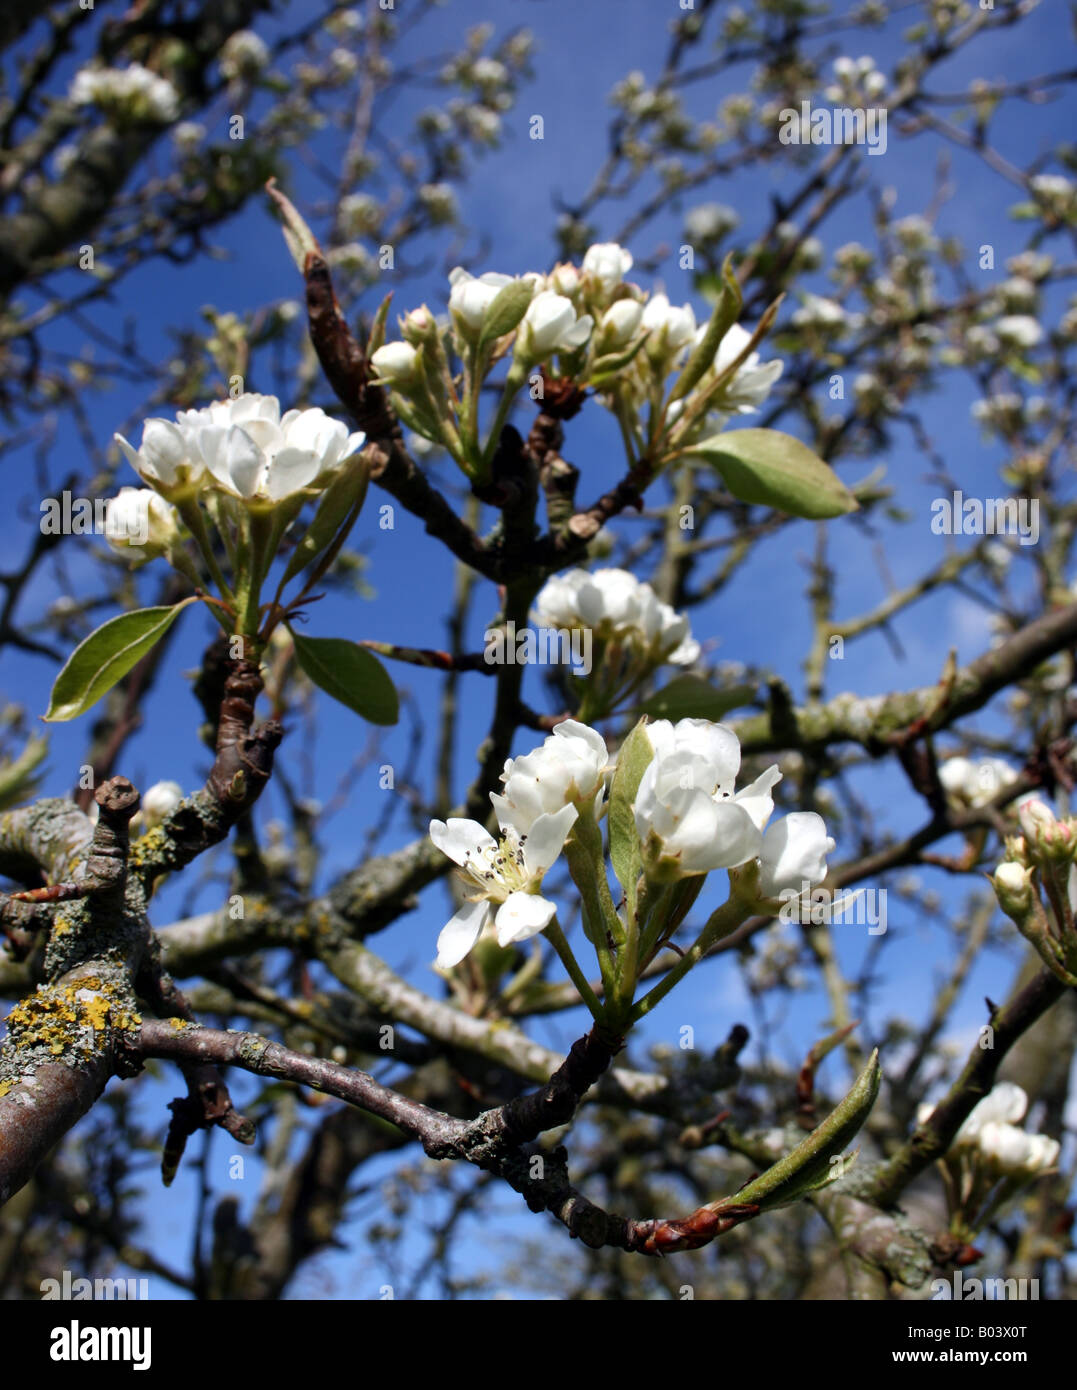 Birnbaum, Nahaufnahme von Creme/Elfenbein farbigen Blüte Frühling Blüte gegen azurblauen Himmel Stockfoto